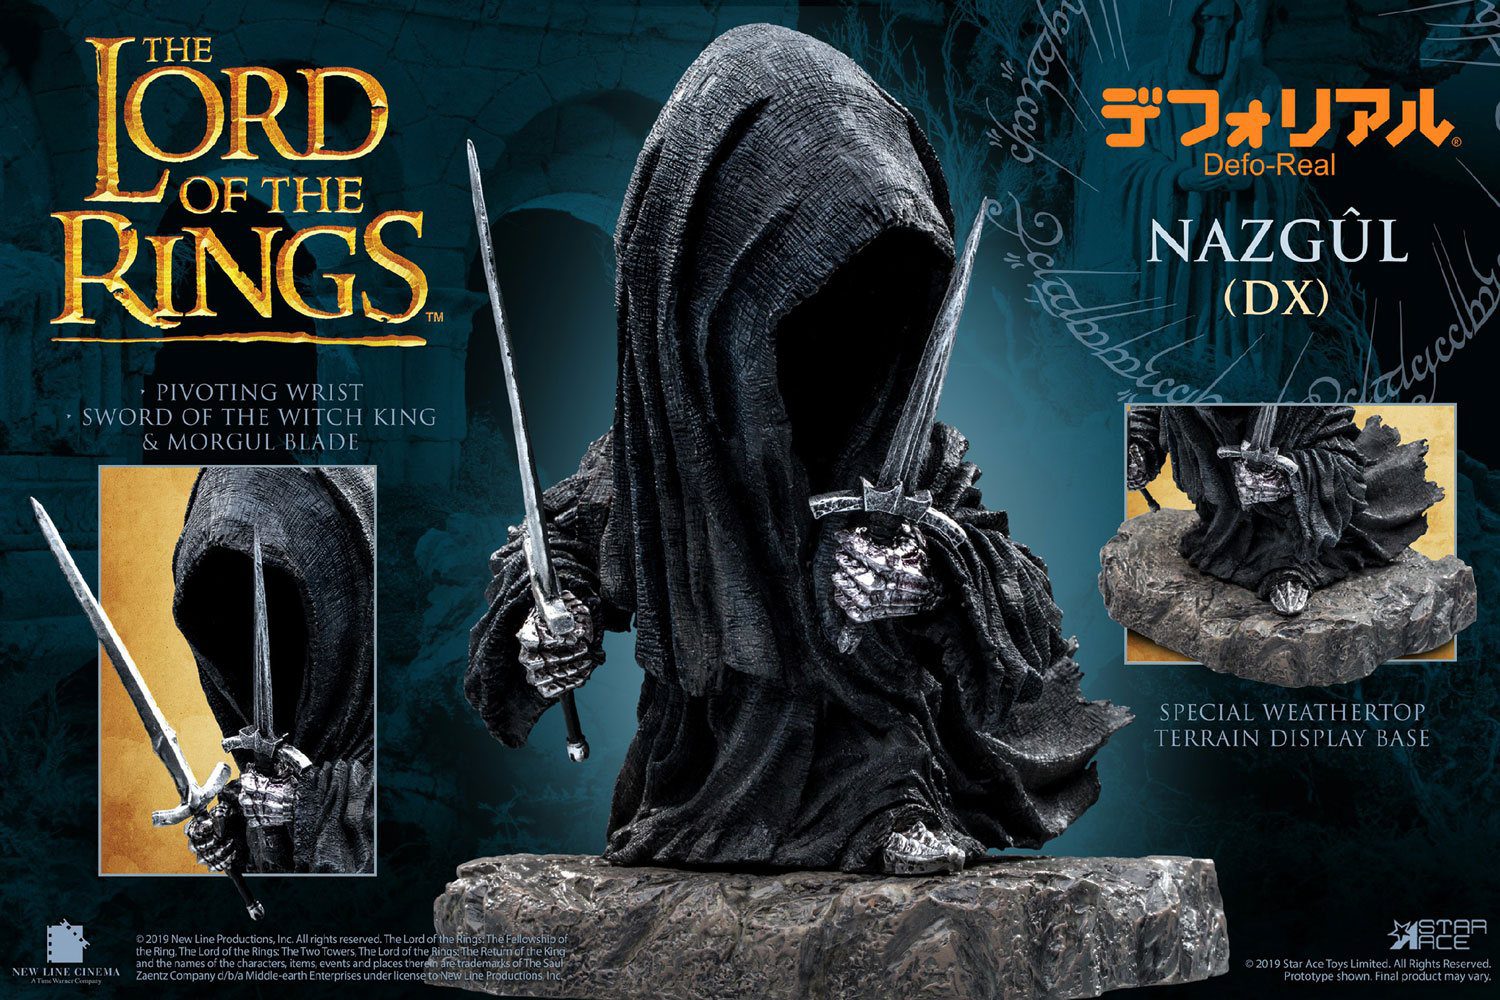 Figura Defo-Real Series Nazgul El Señor de los Anillos Deluxe Version 15 cm